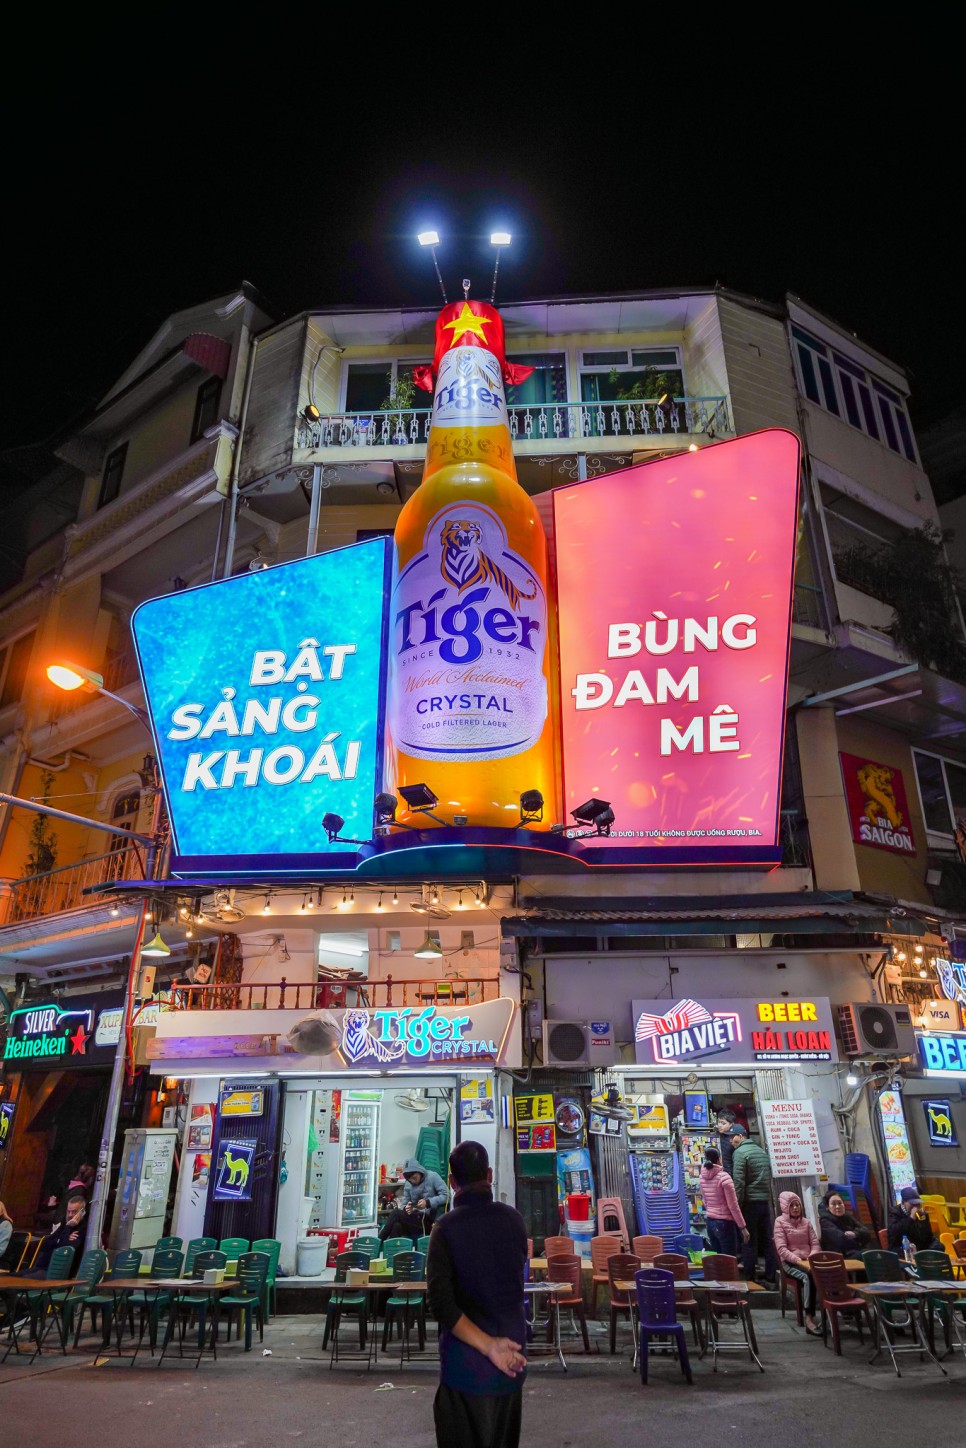 베트남 하노이 마사지 가격 팁 맥주거리 근처 바로스파 후기